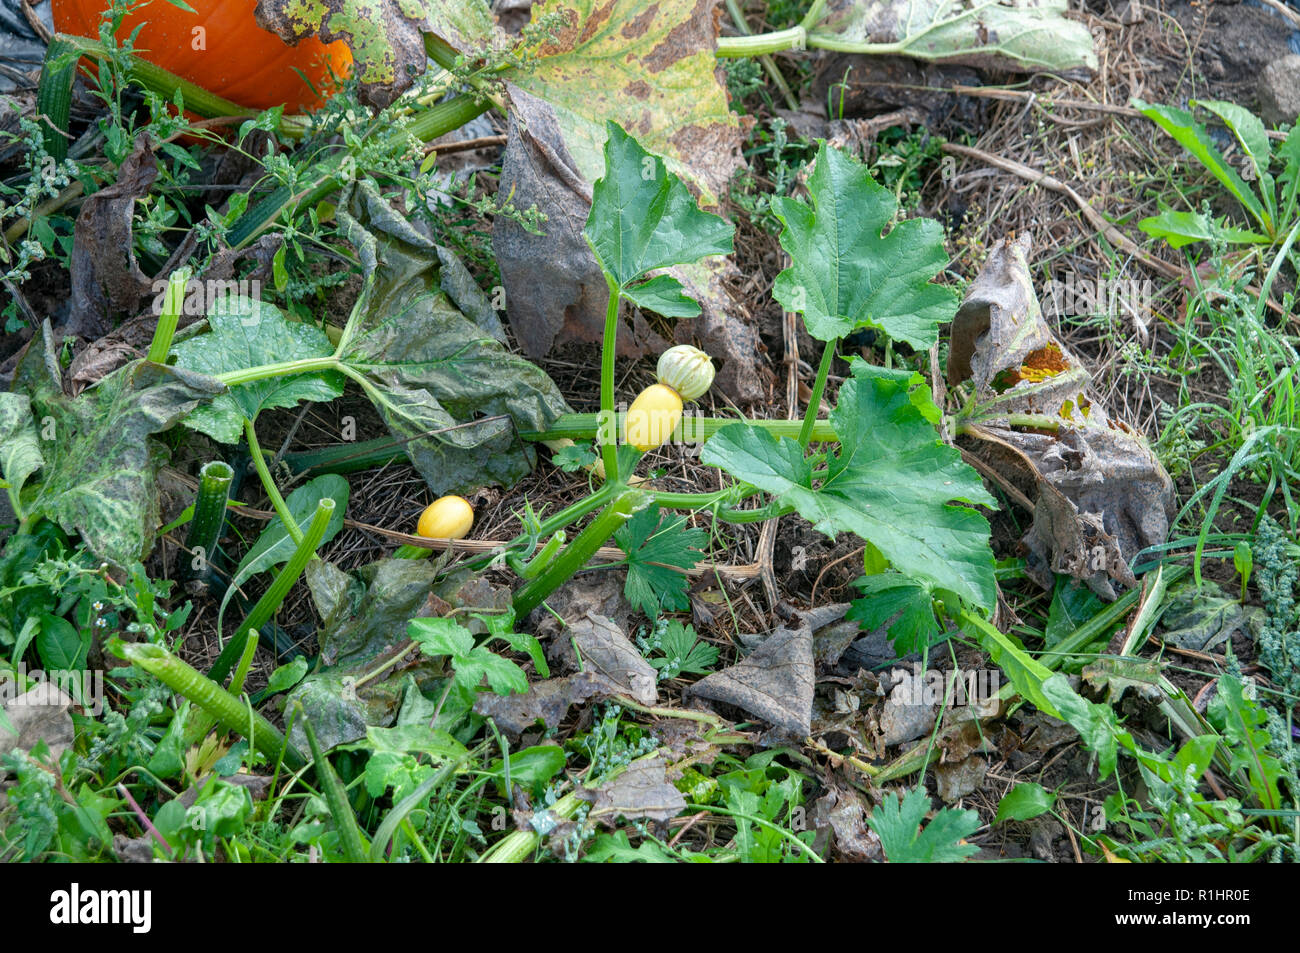 Sbocciano i fiori di zucca zucca in campo. Zucca (Cucurbita sp.) che cresce in un campo. Queste piante producono grandi frutti commestibili. Fotografato a Neustif Foto Stock